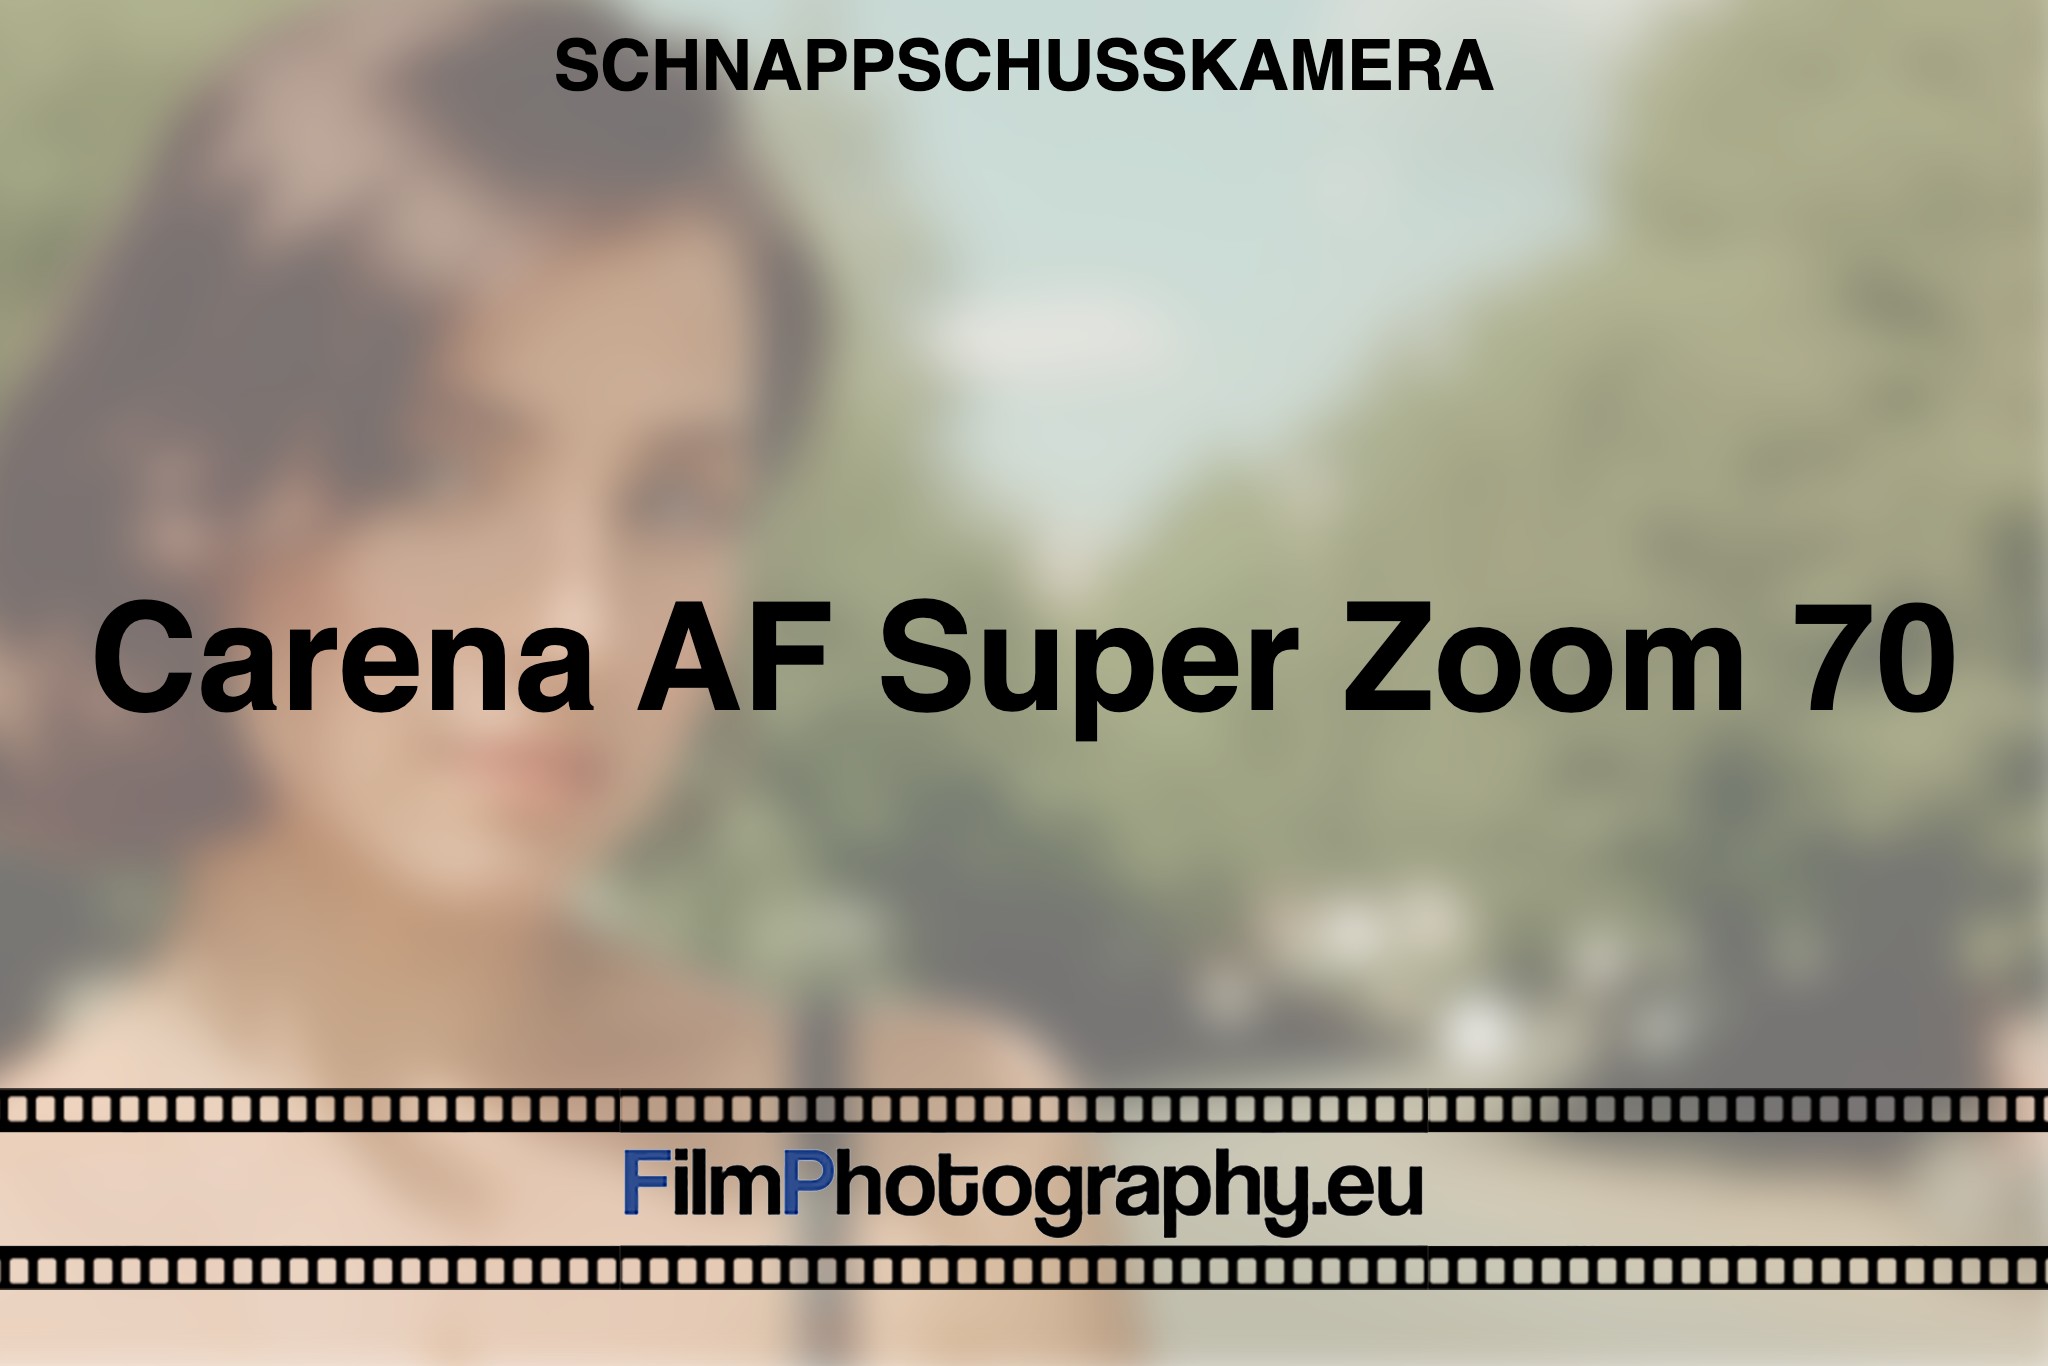 carena-af-super-zoom-70-schnappschusskamera-bnv